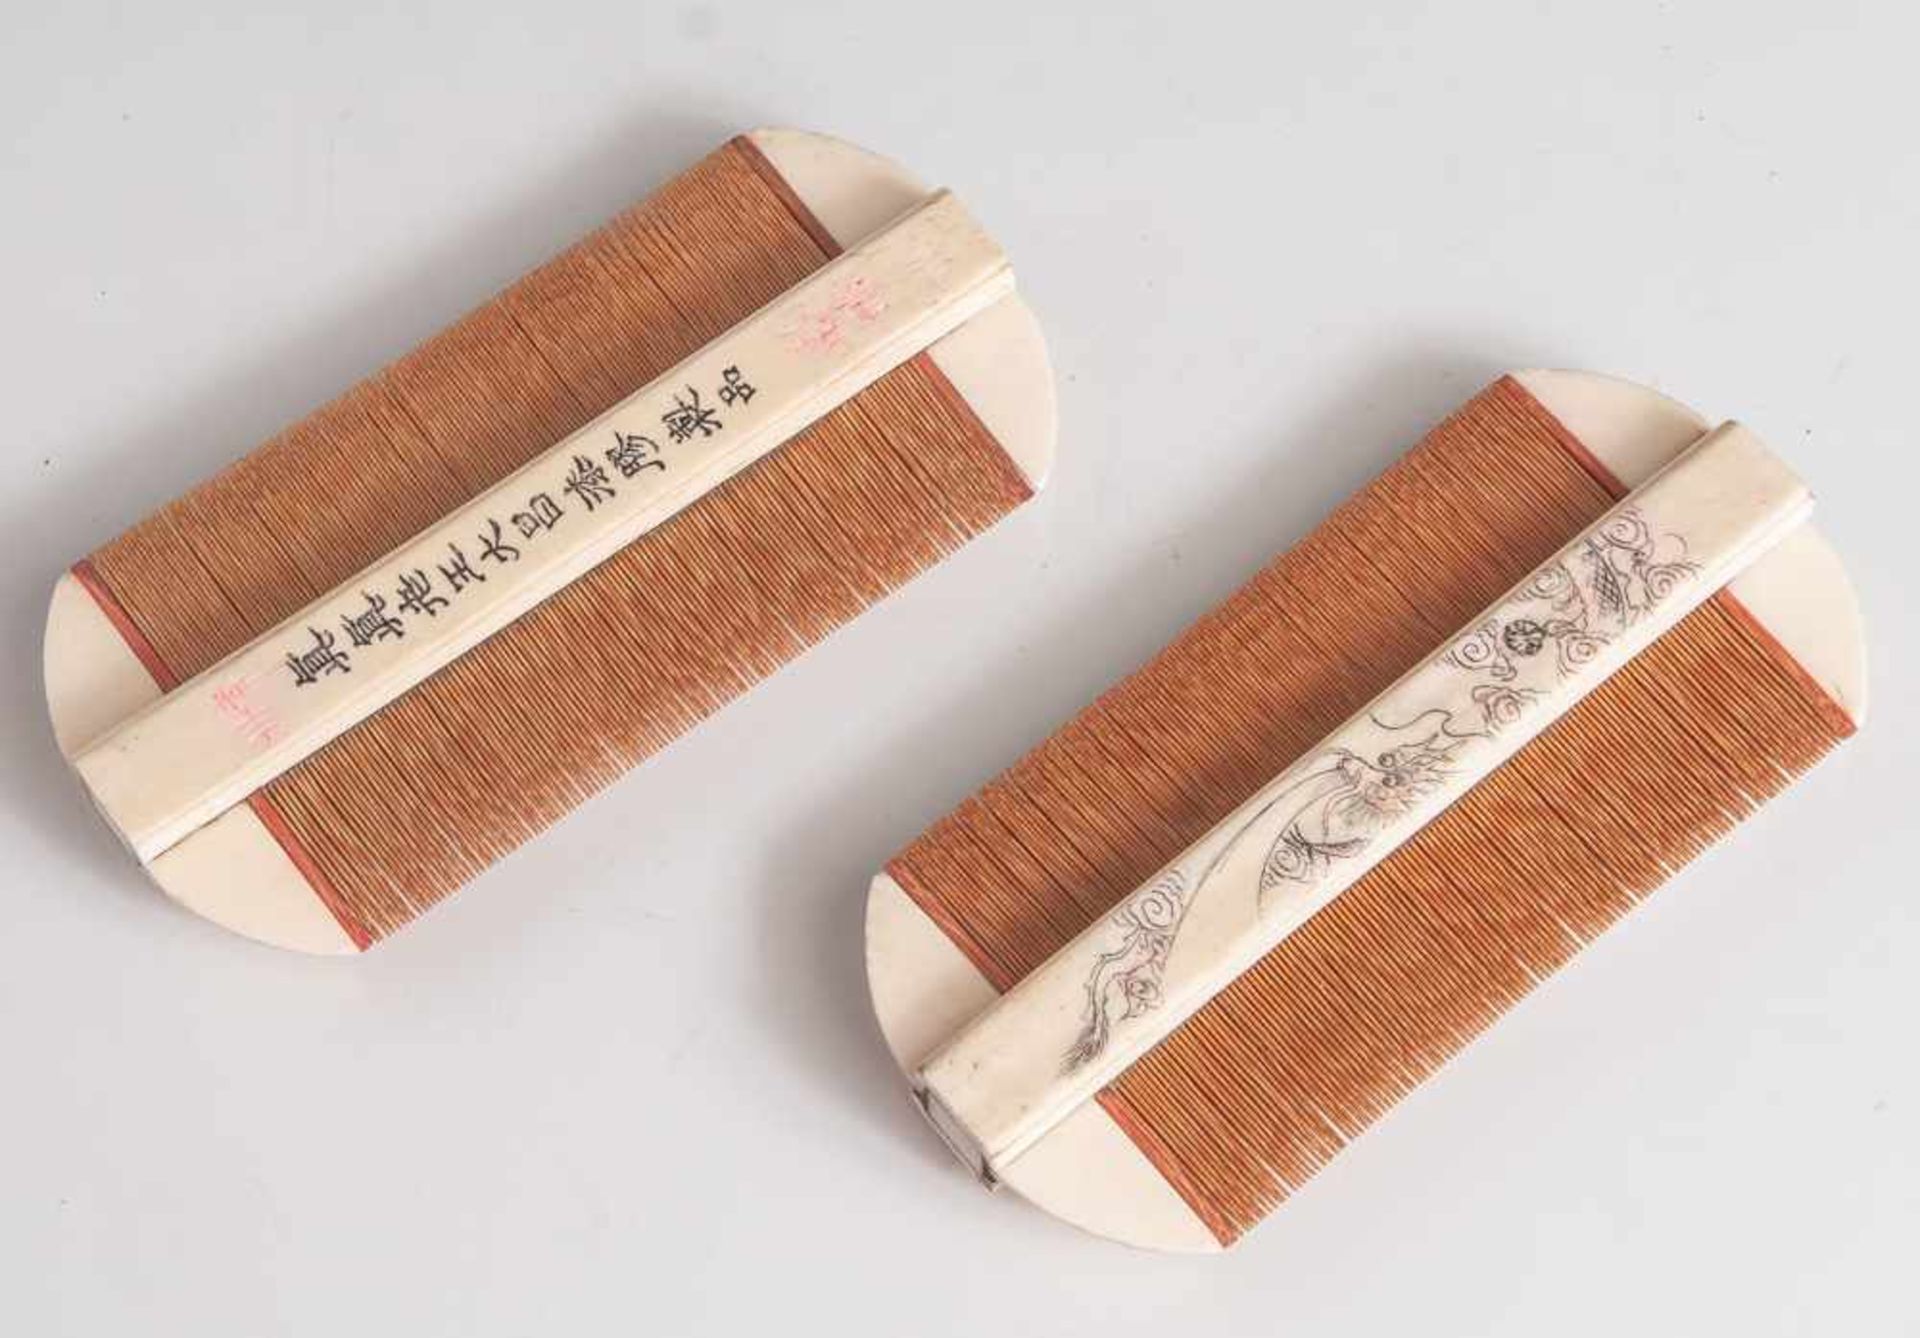 Paar Nissenkämme, China, Ende 19. Jahrhundert/ um 1900, Elfenbein und Holz, m. feingravierter und